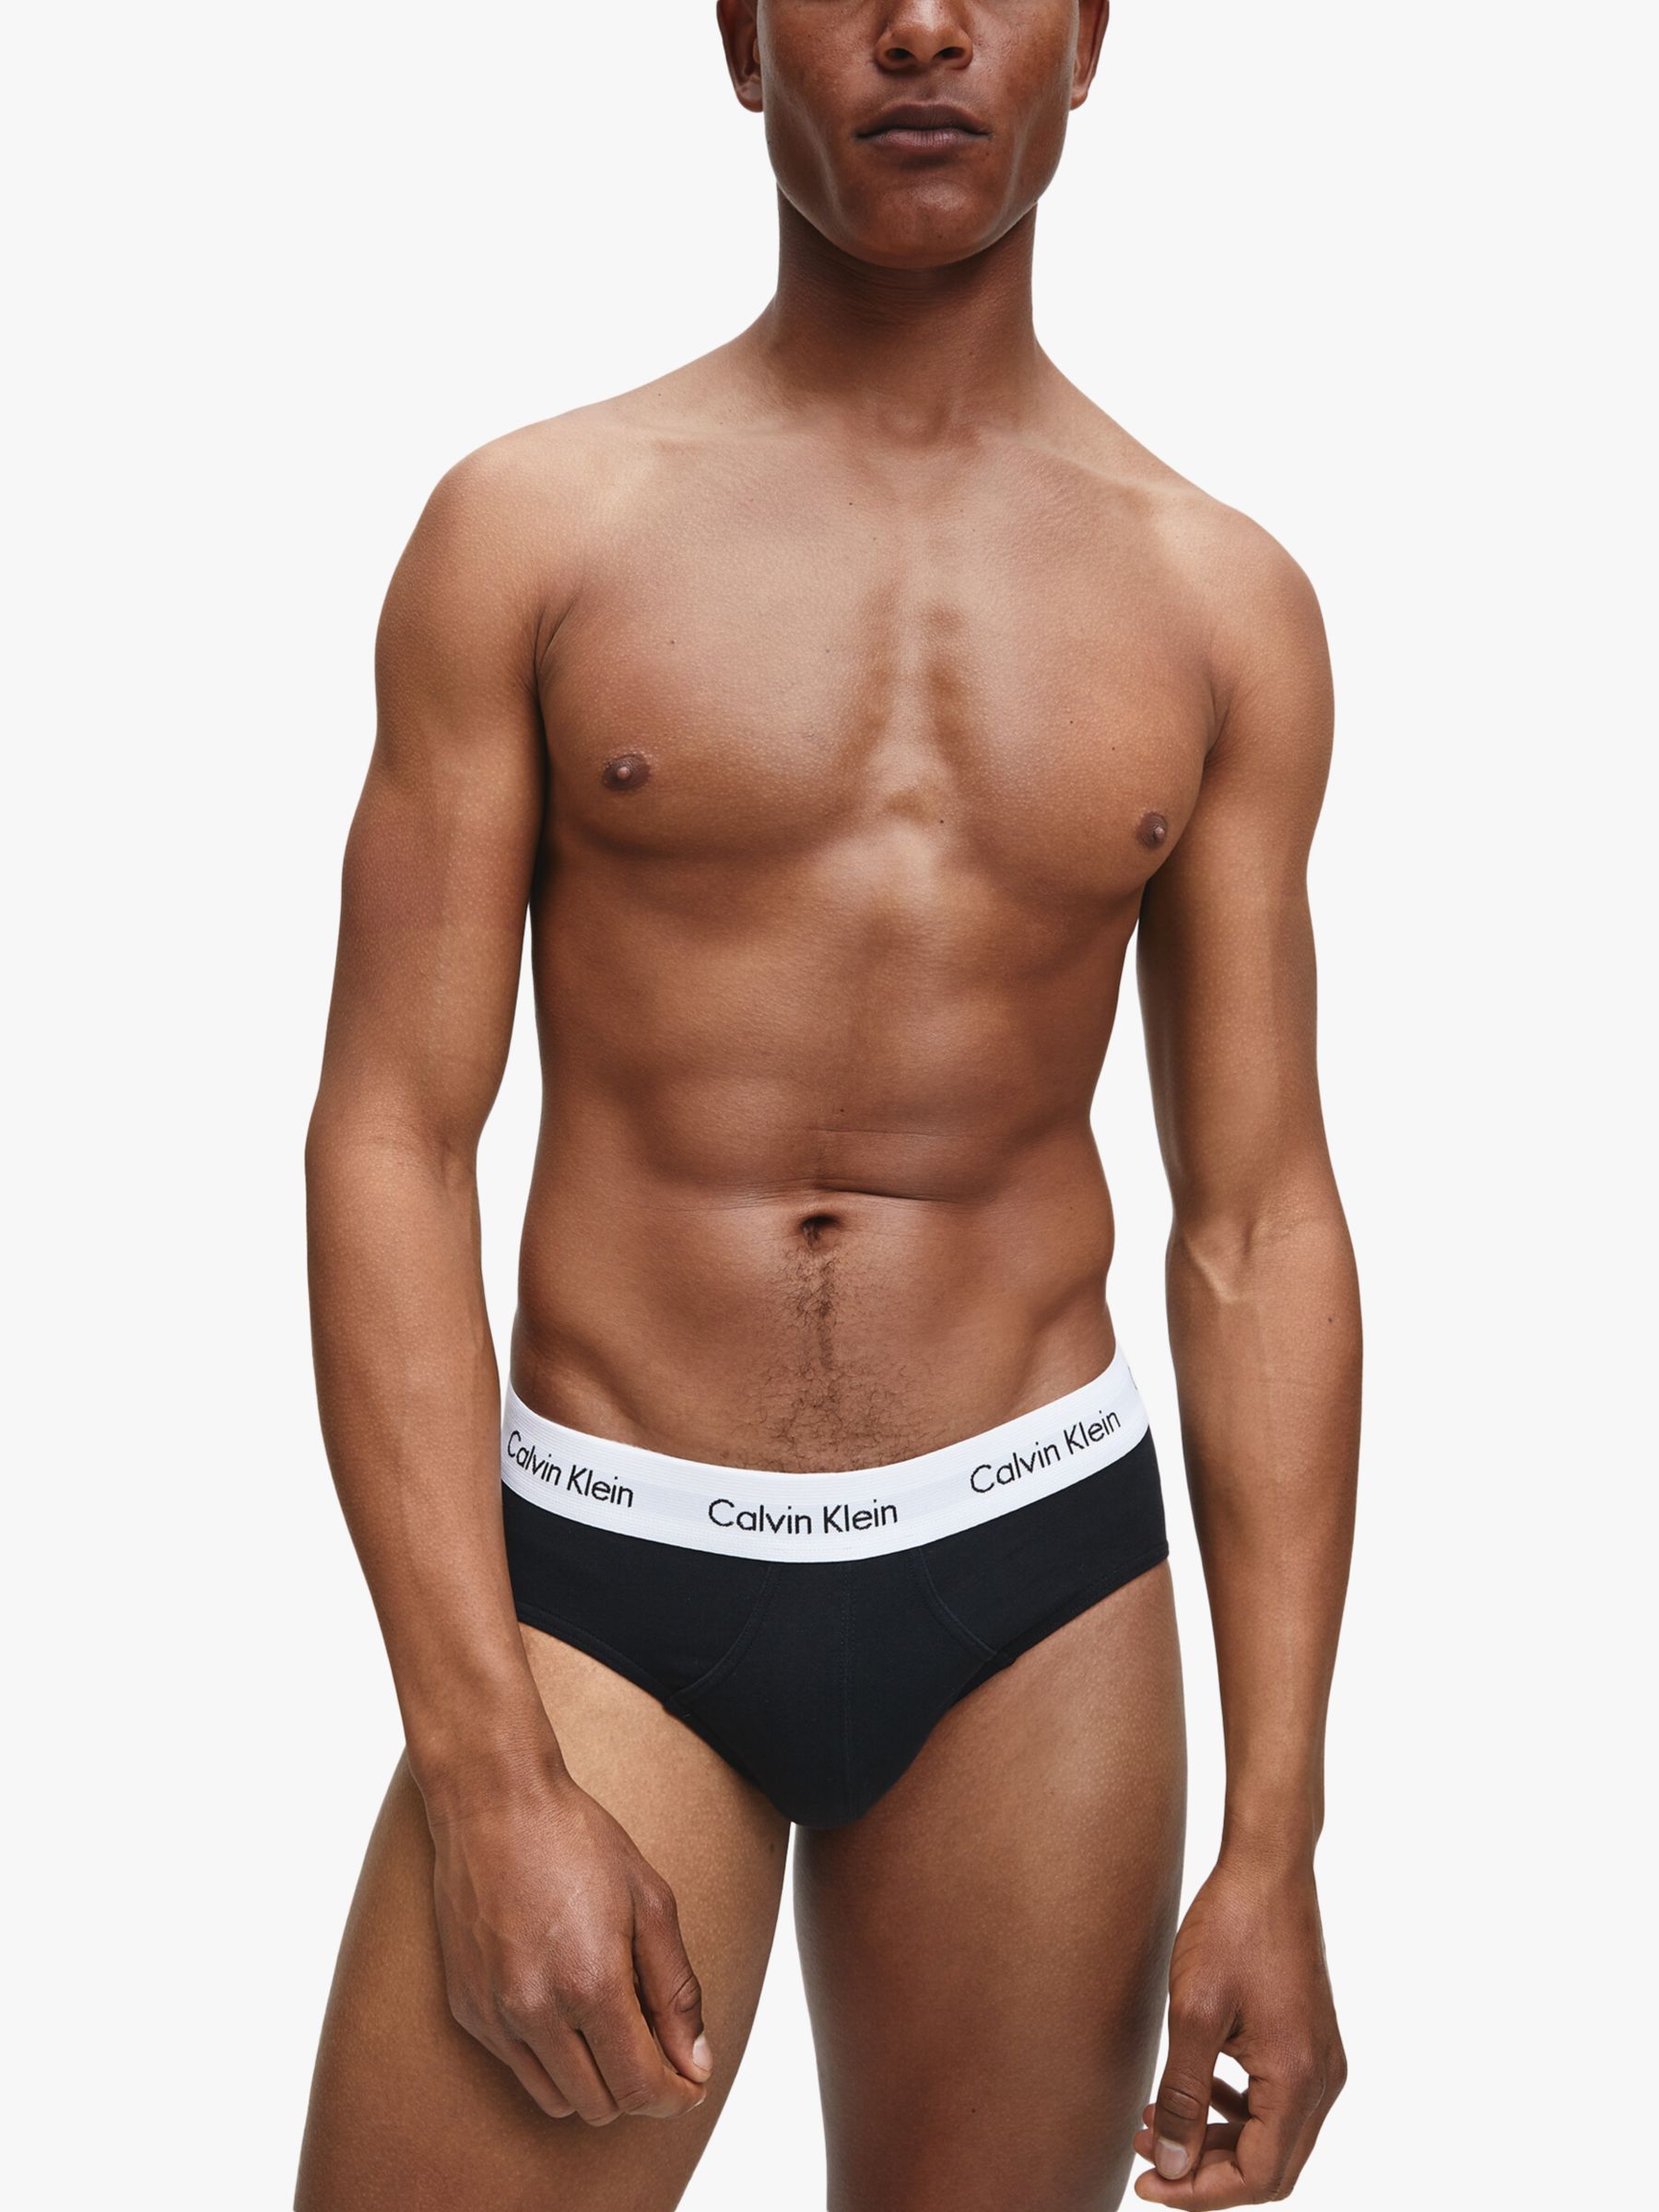 Calvin Klein Underwear Cotton Briefs, Pack of 3, Black at John